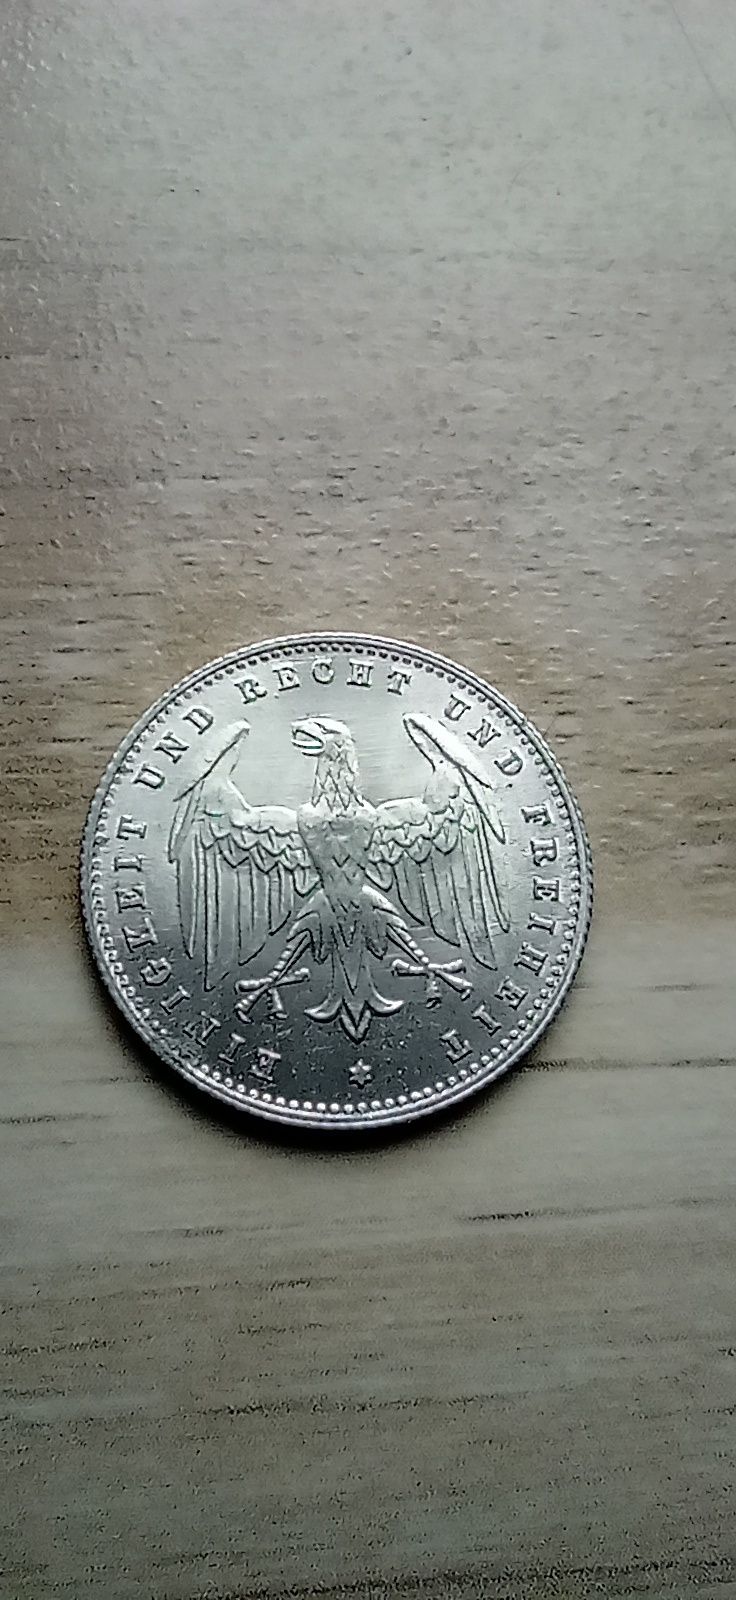 Moneta 200 marek 1923